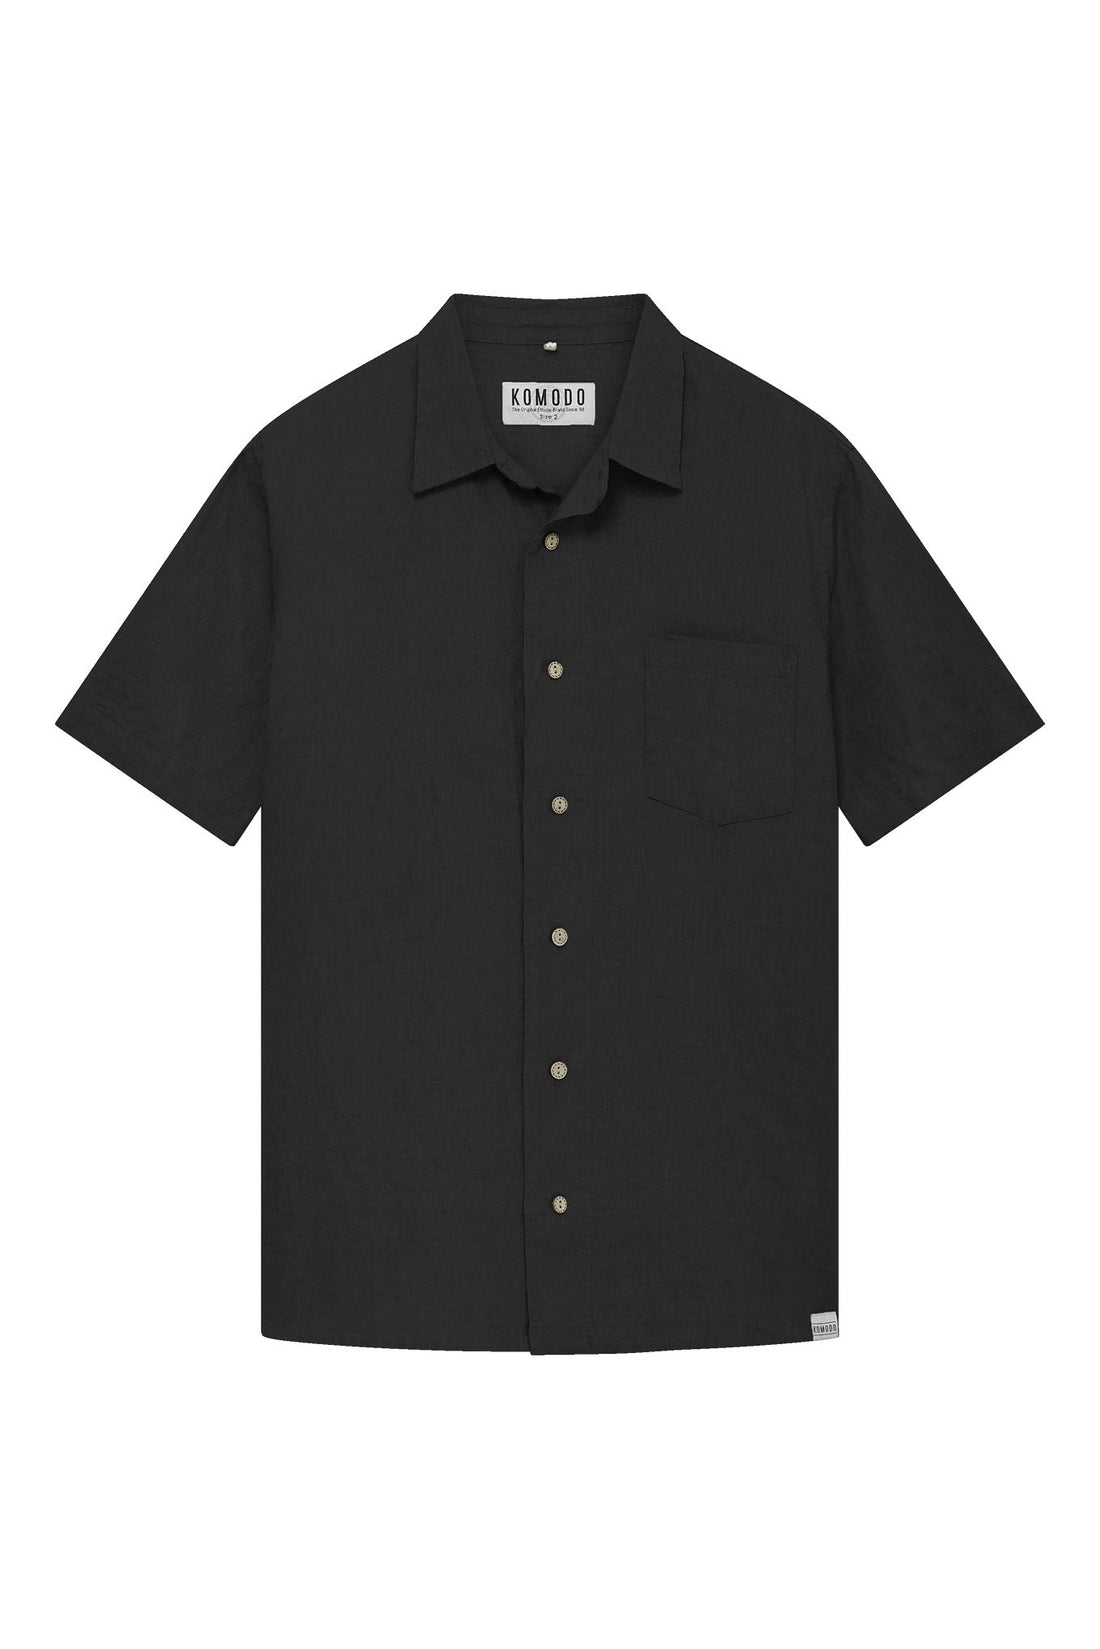 DINGWALLS - Linen Shirt Black